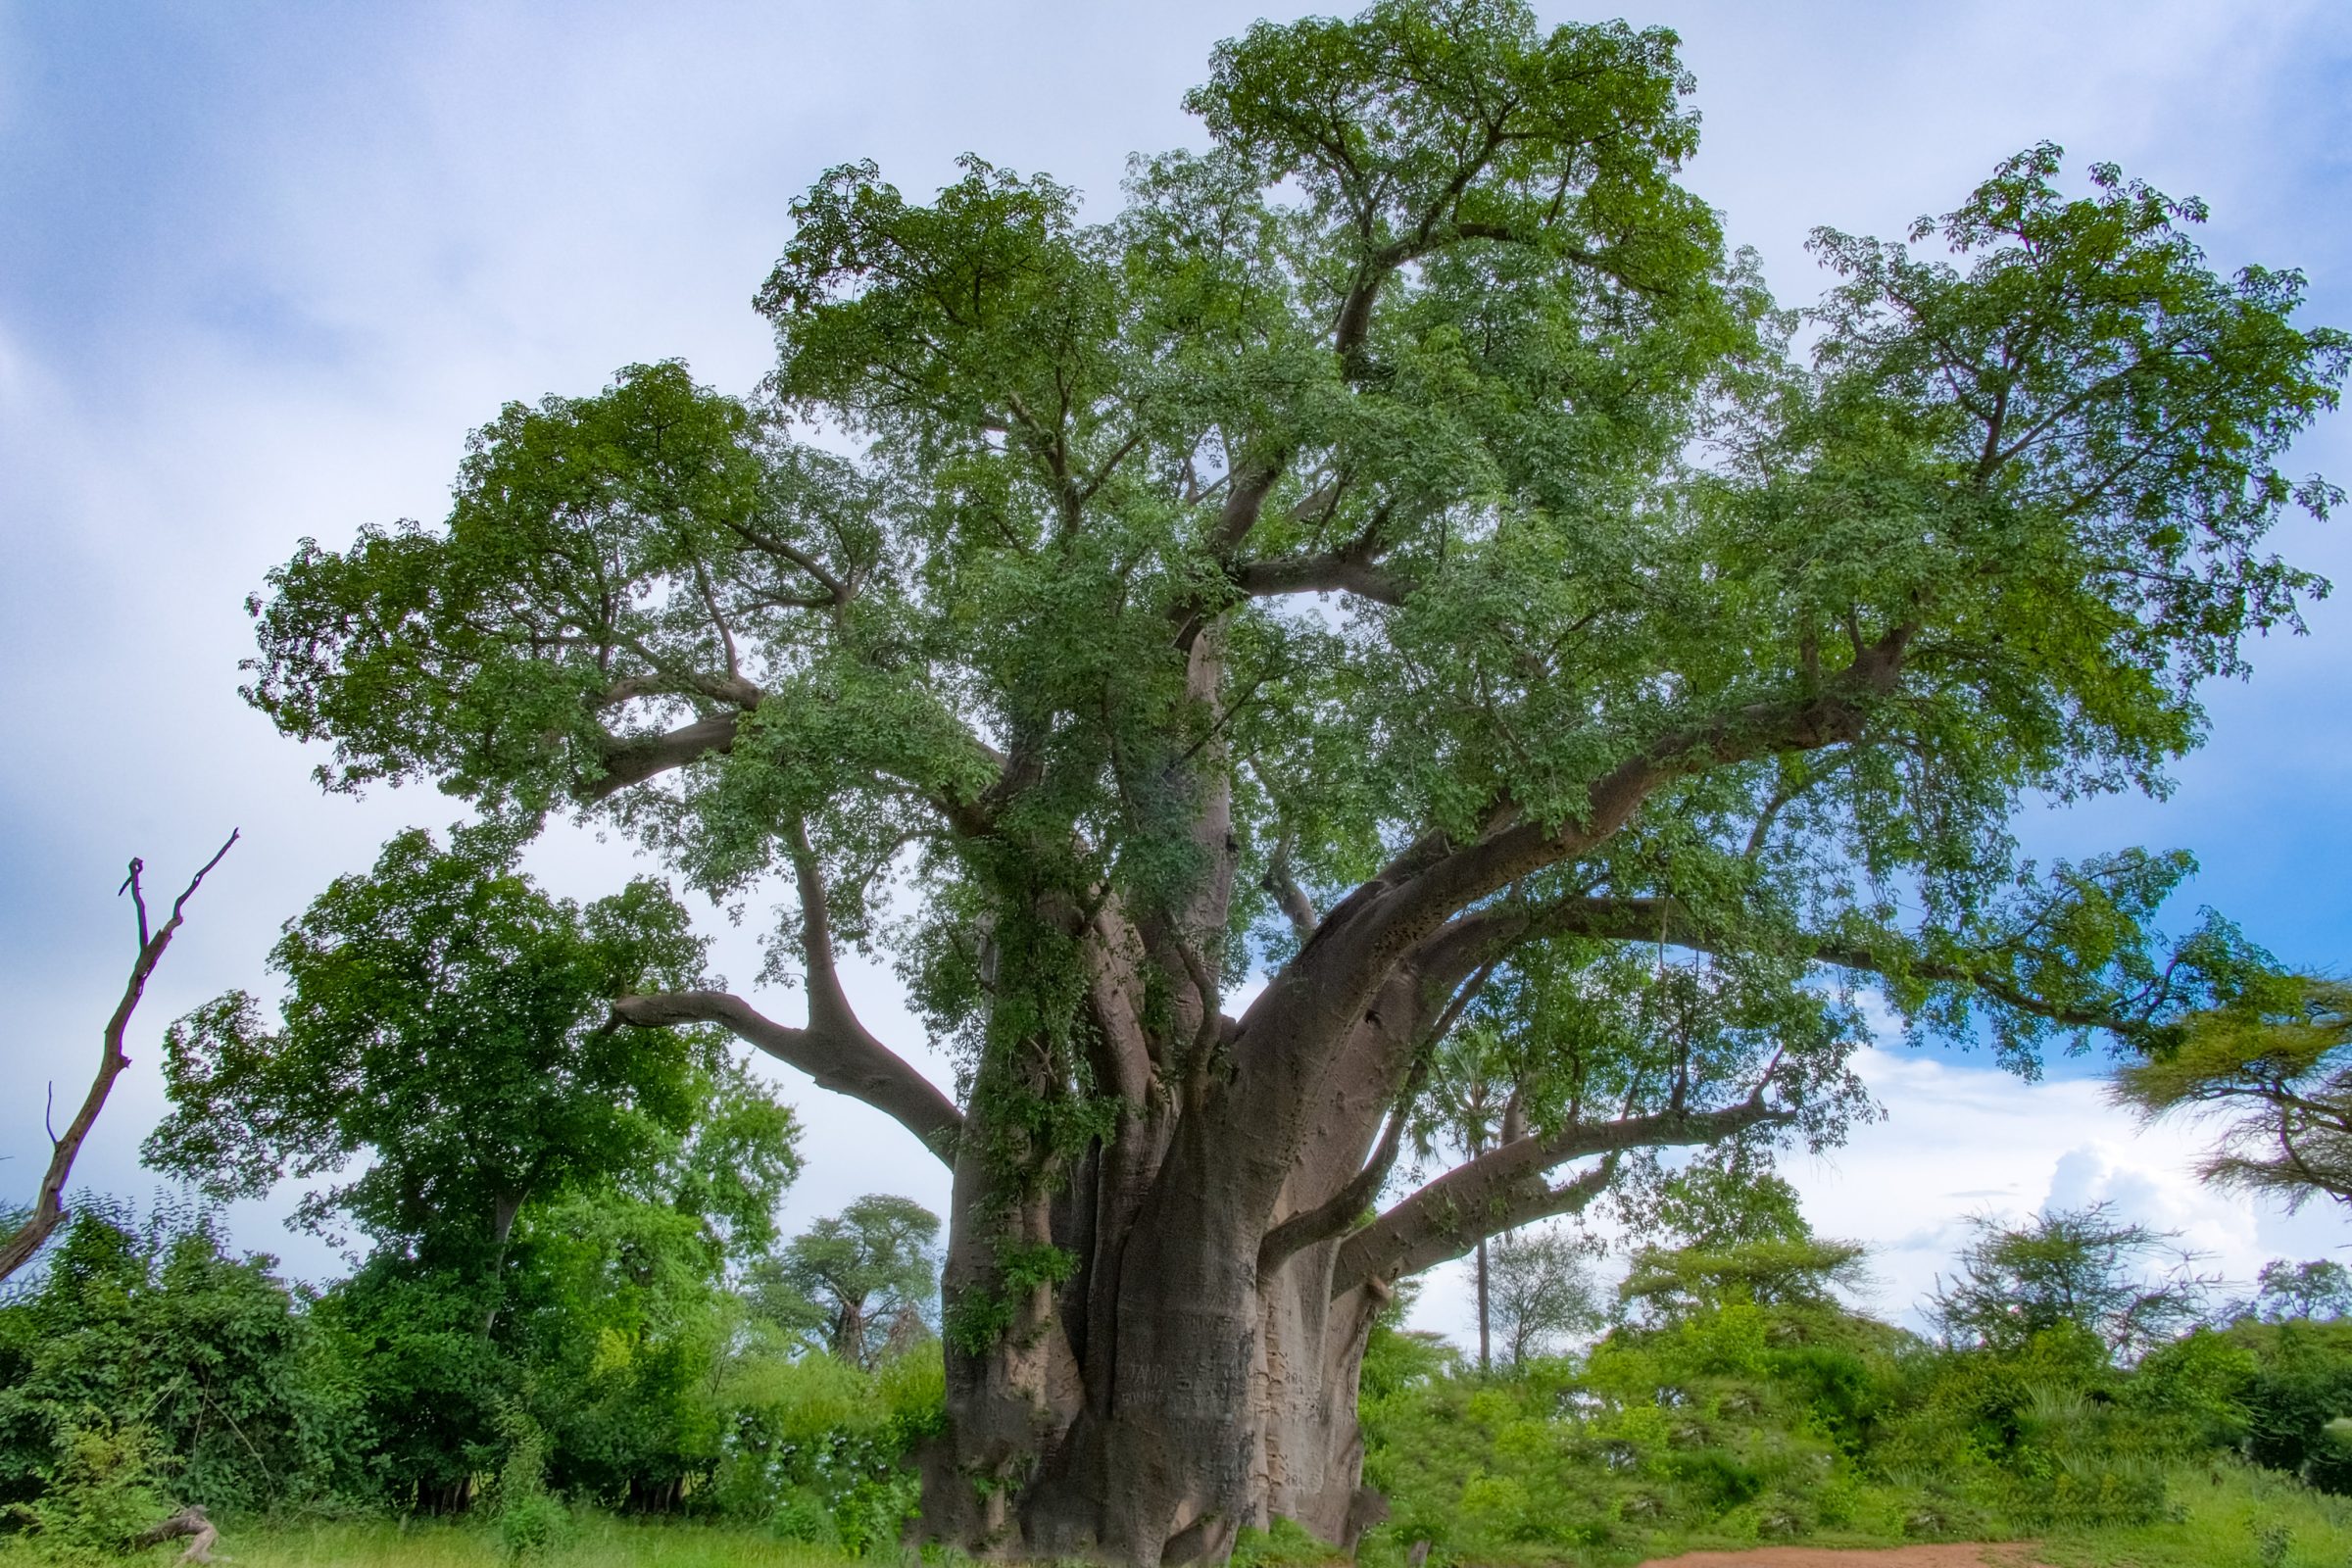 The Big Tree, duże drzewo baobabu na obrzeżach Parku Narodowego Wodospadów Wiktorii